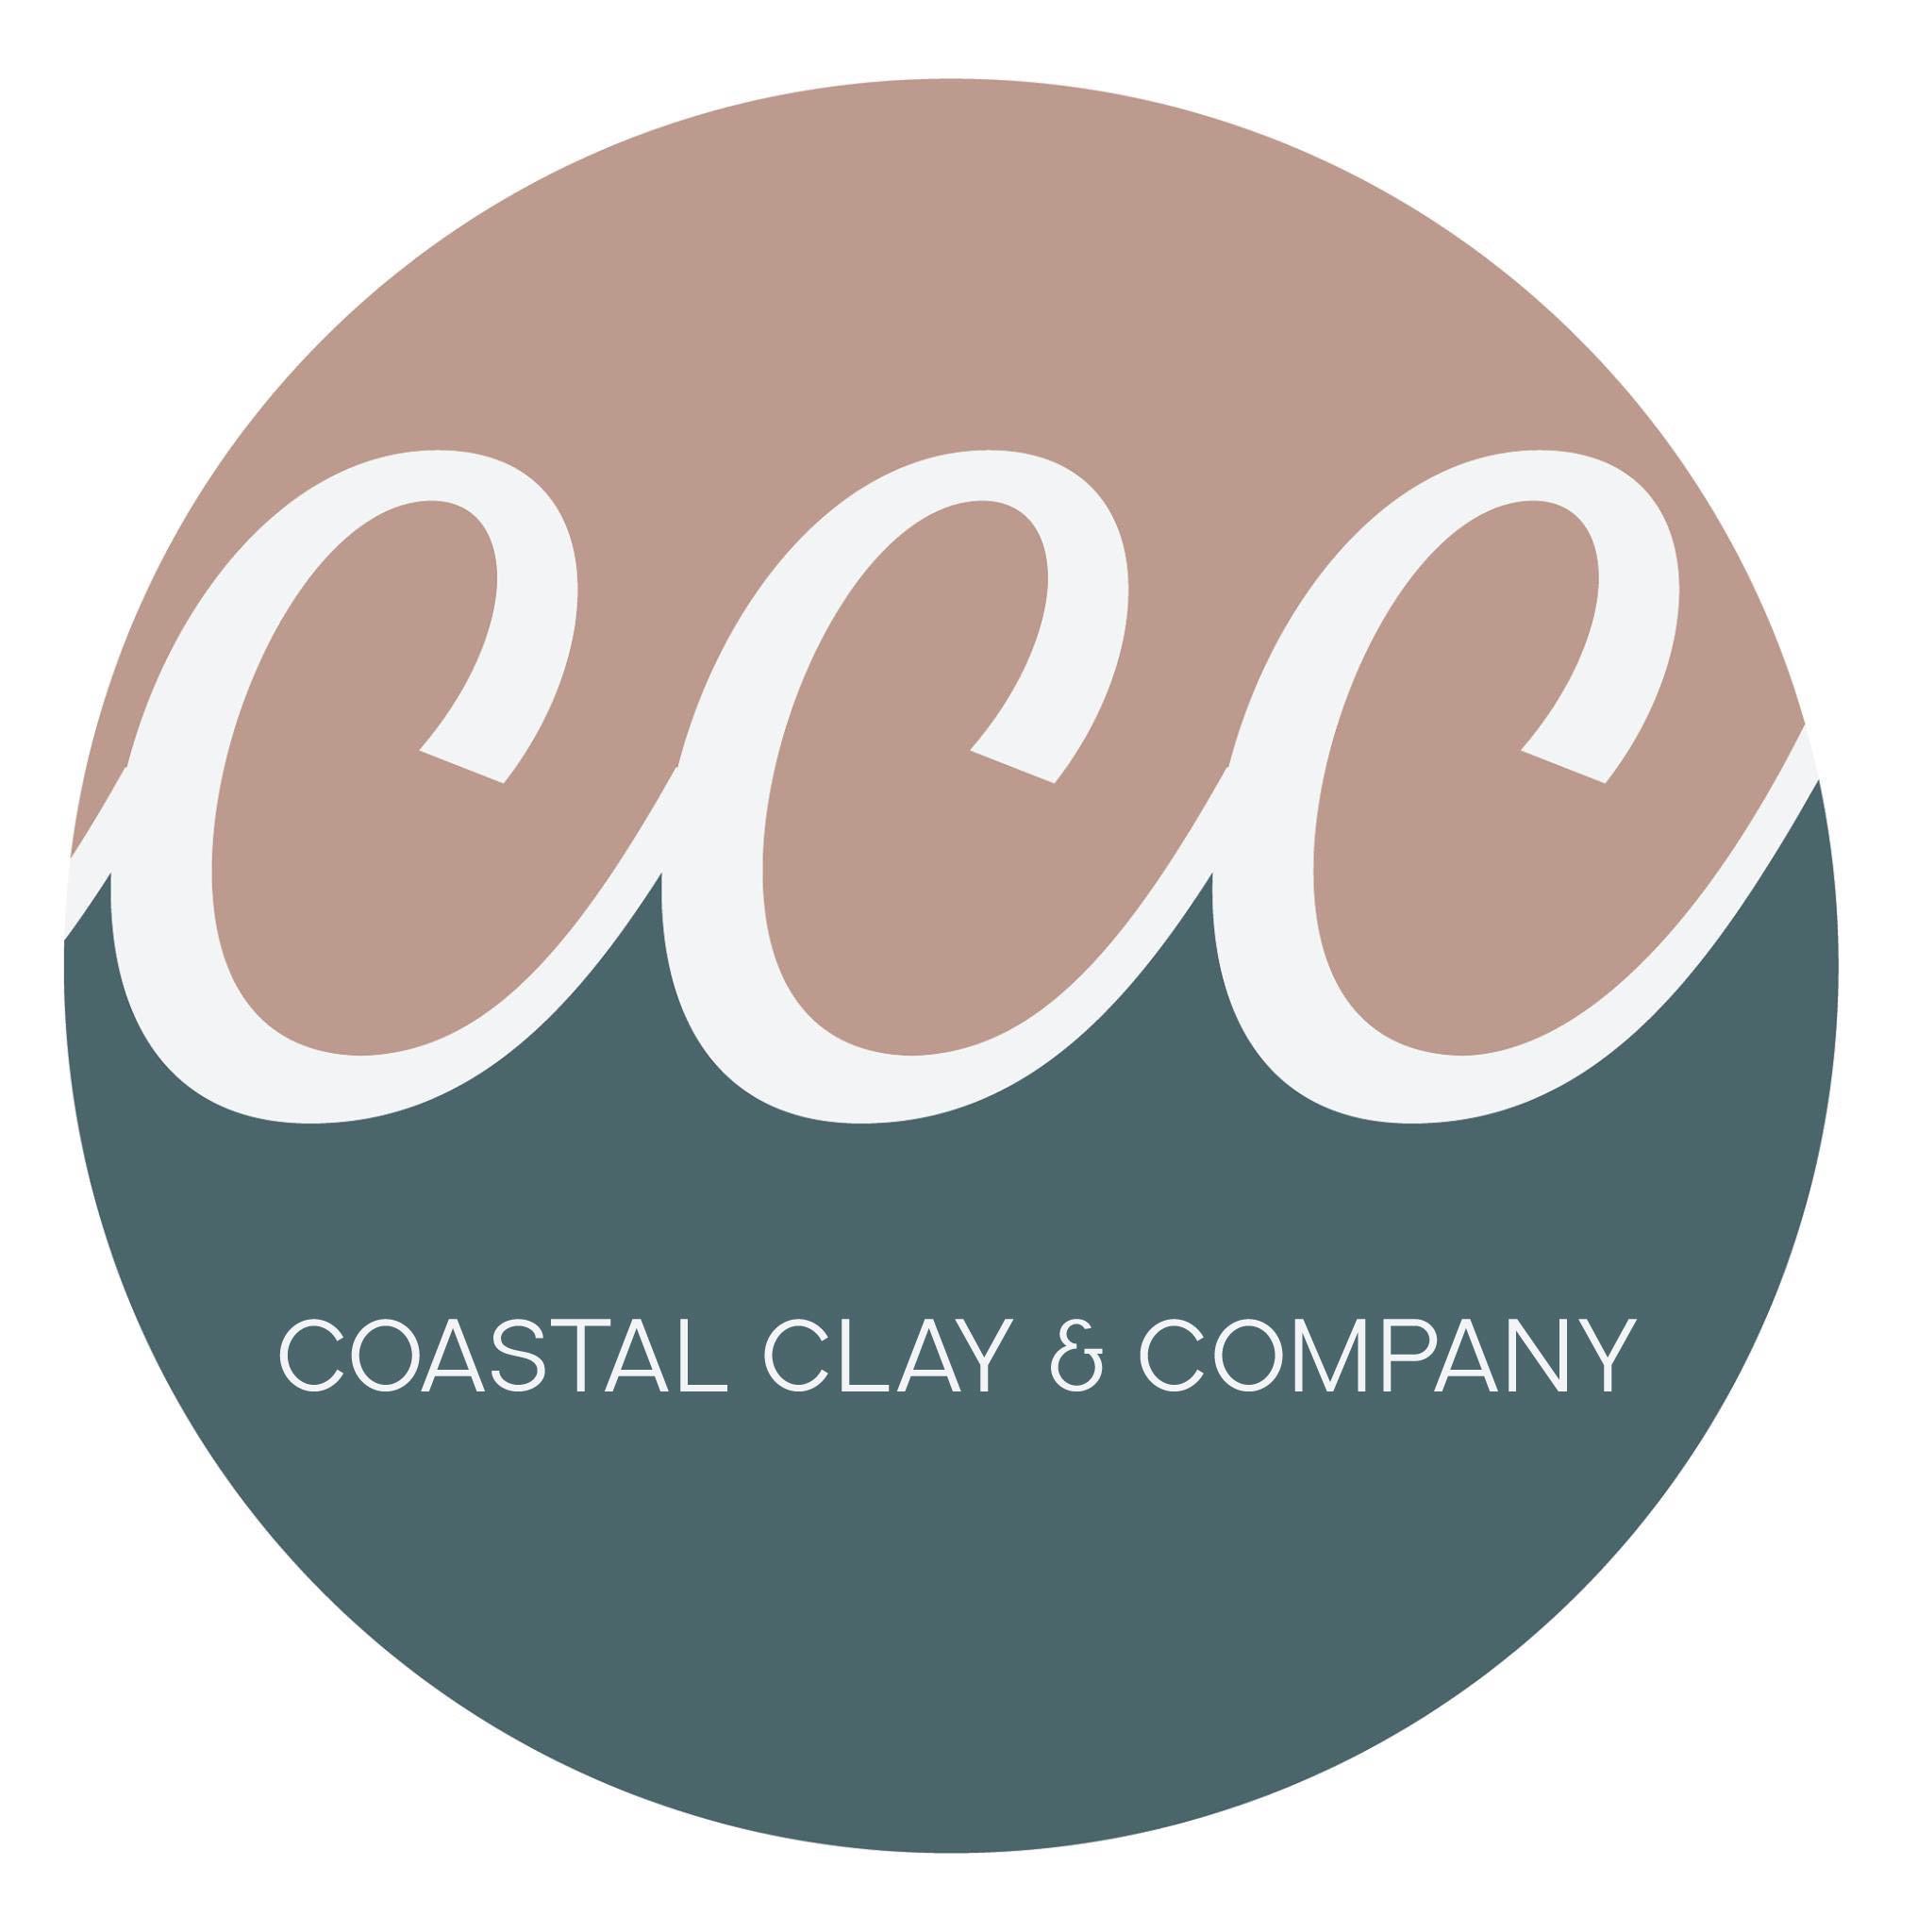 Coastal Clay & Company